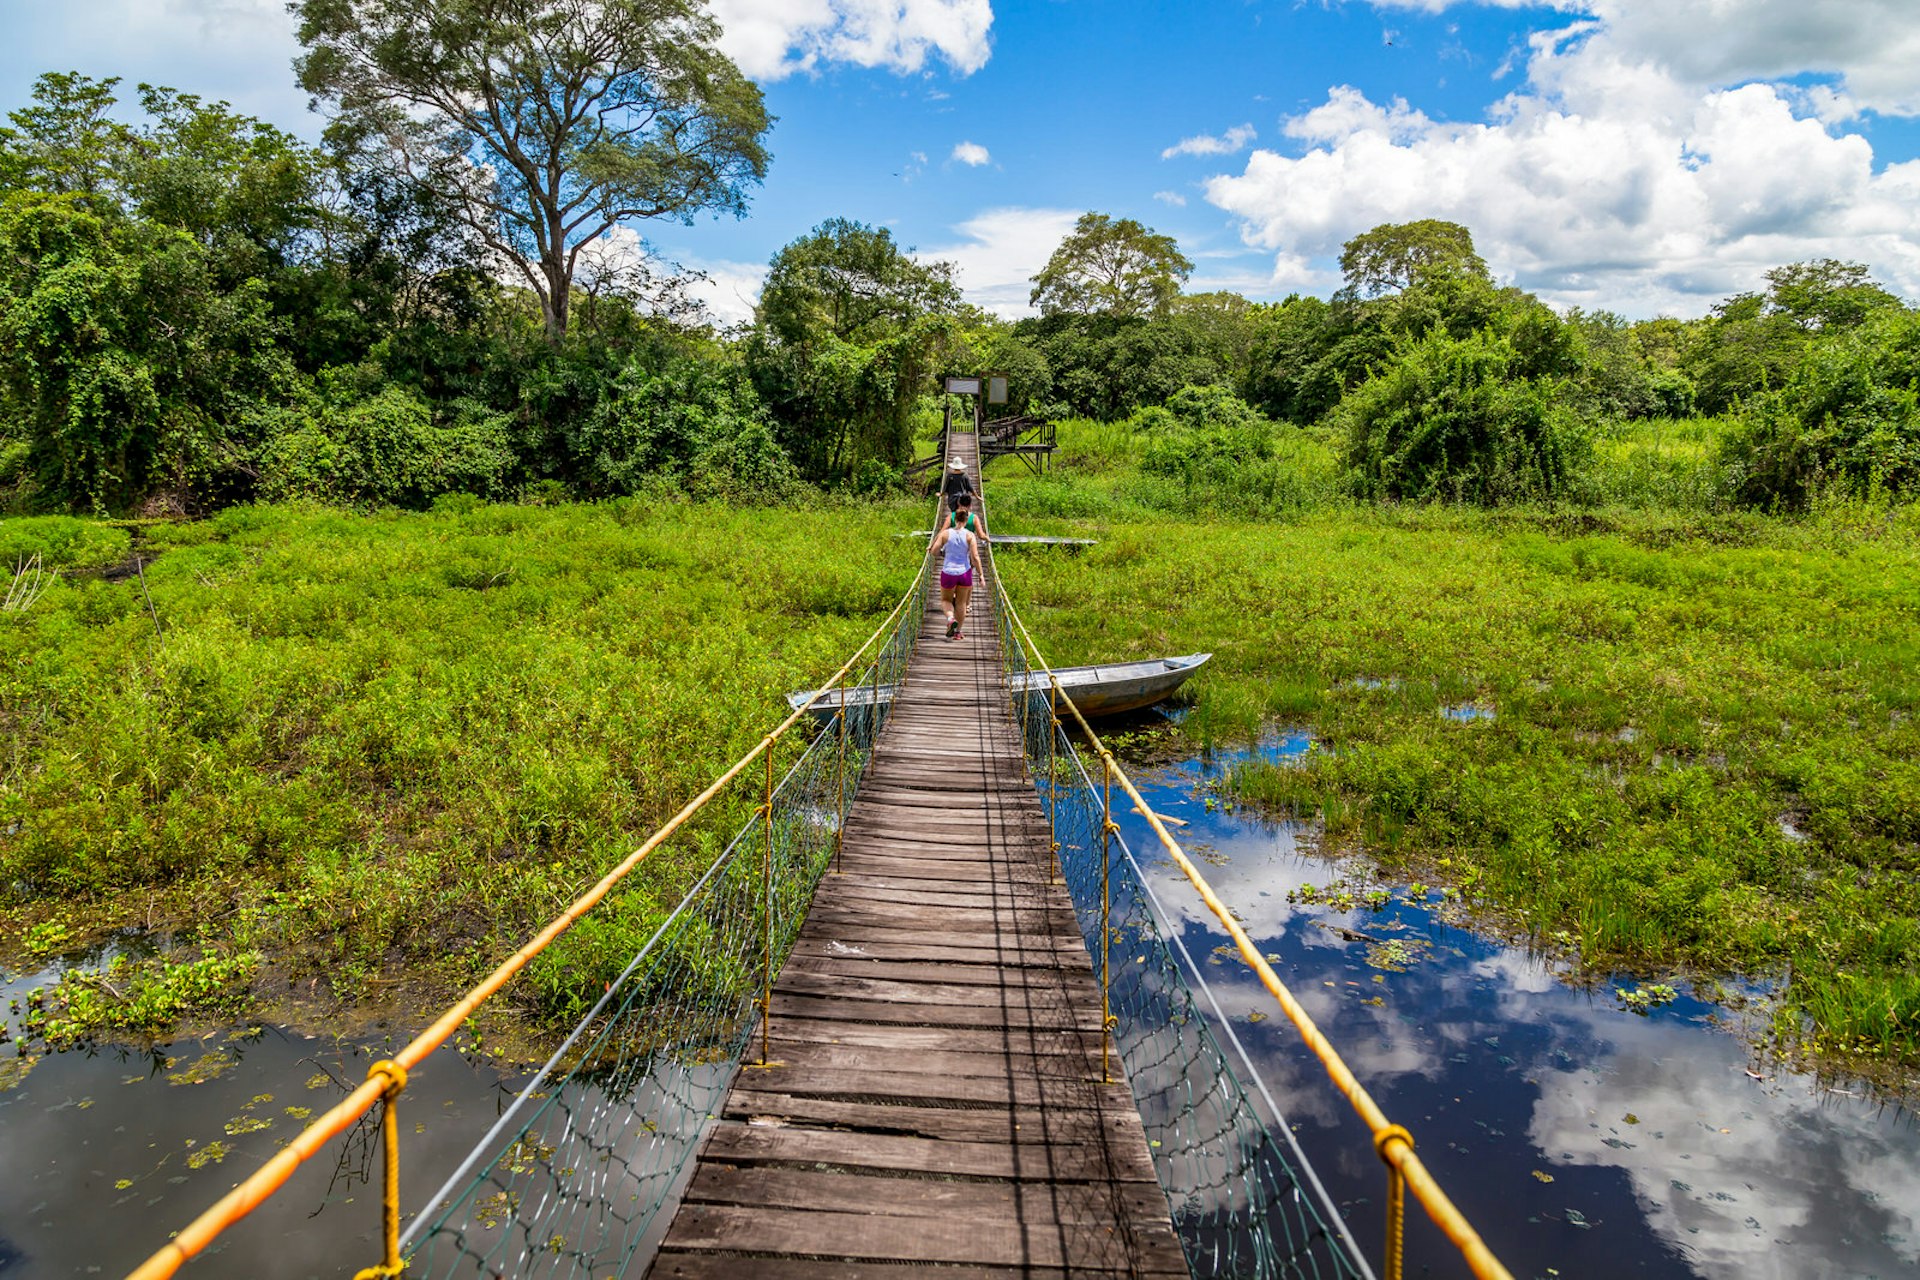 Duckboards across a wetland in Pantanal, Brazil © Hakat / Shutterstock